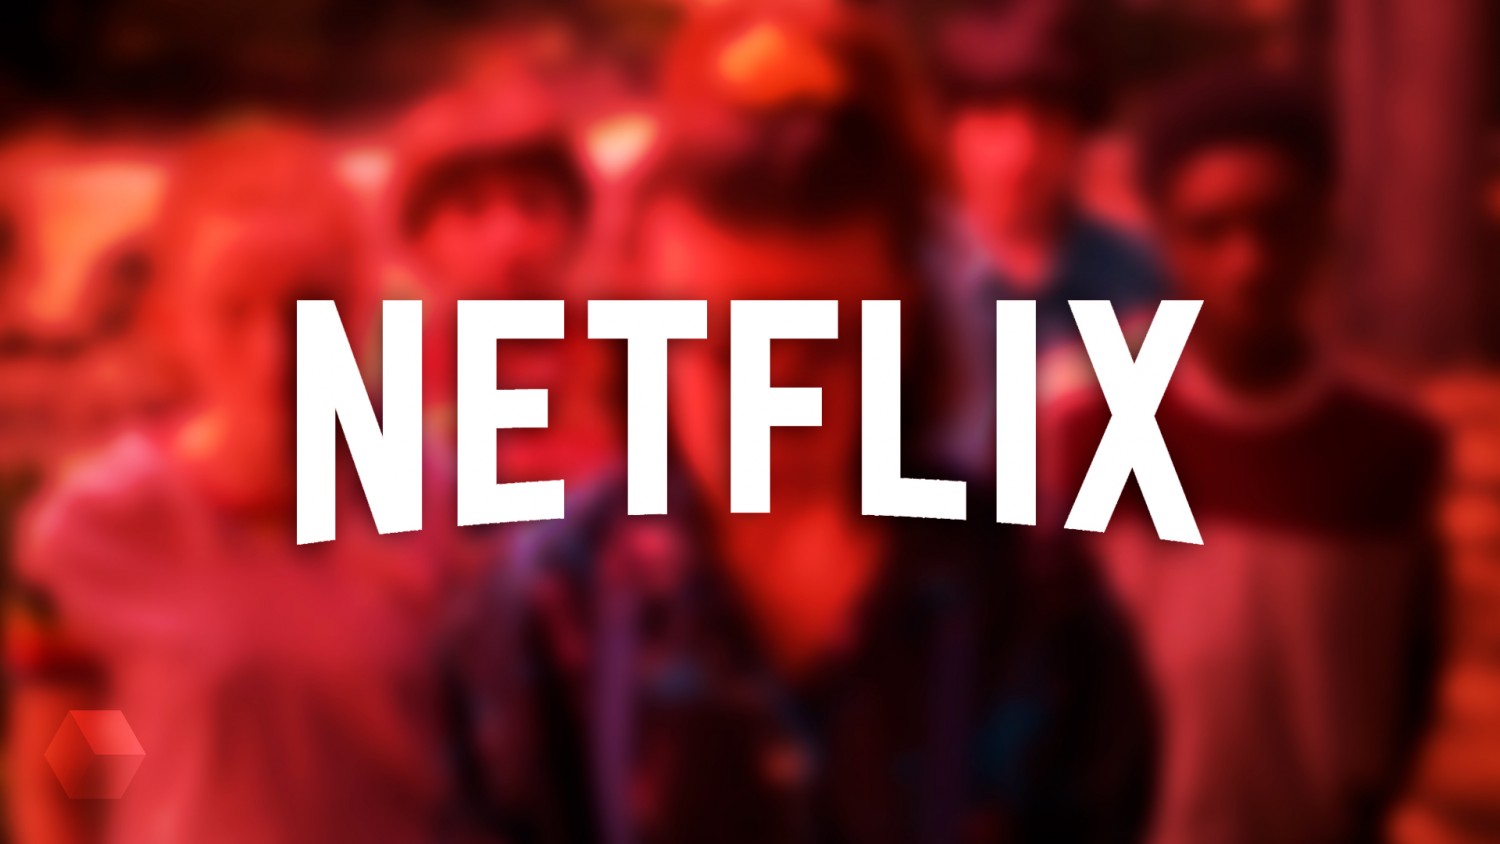 Акции Netflix растут в преддверии запуска рекламы. Каковы действия компании?